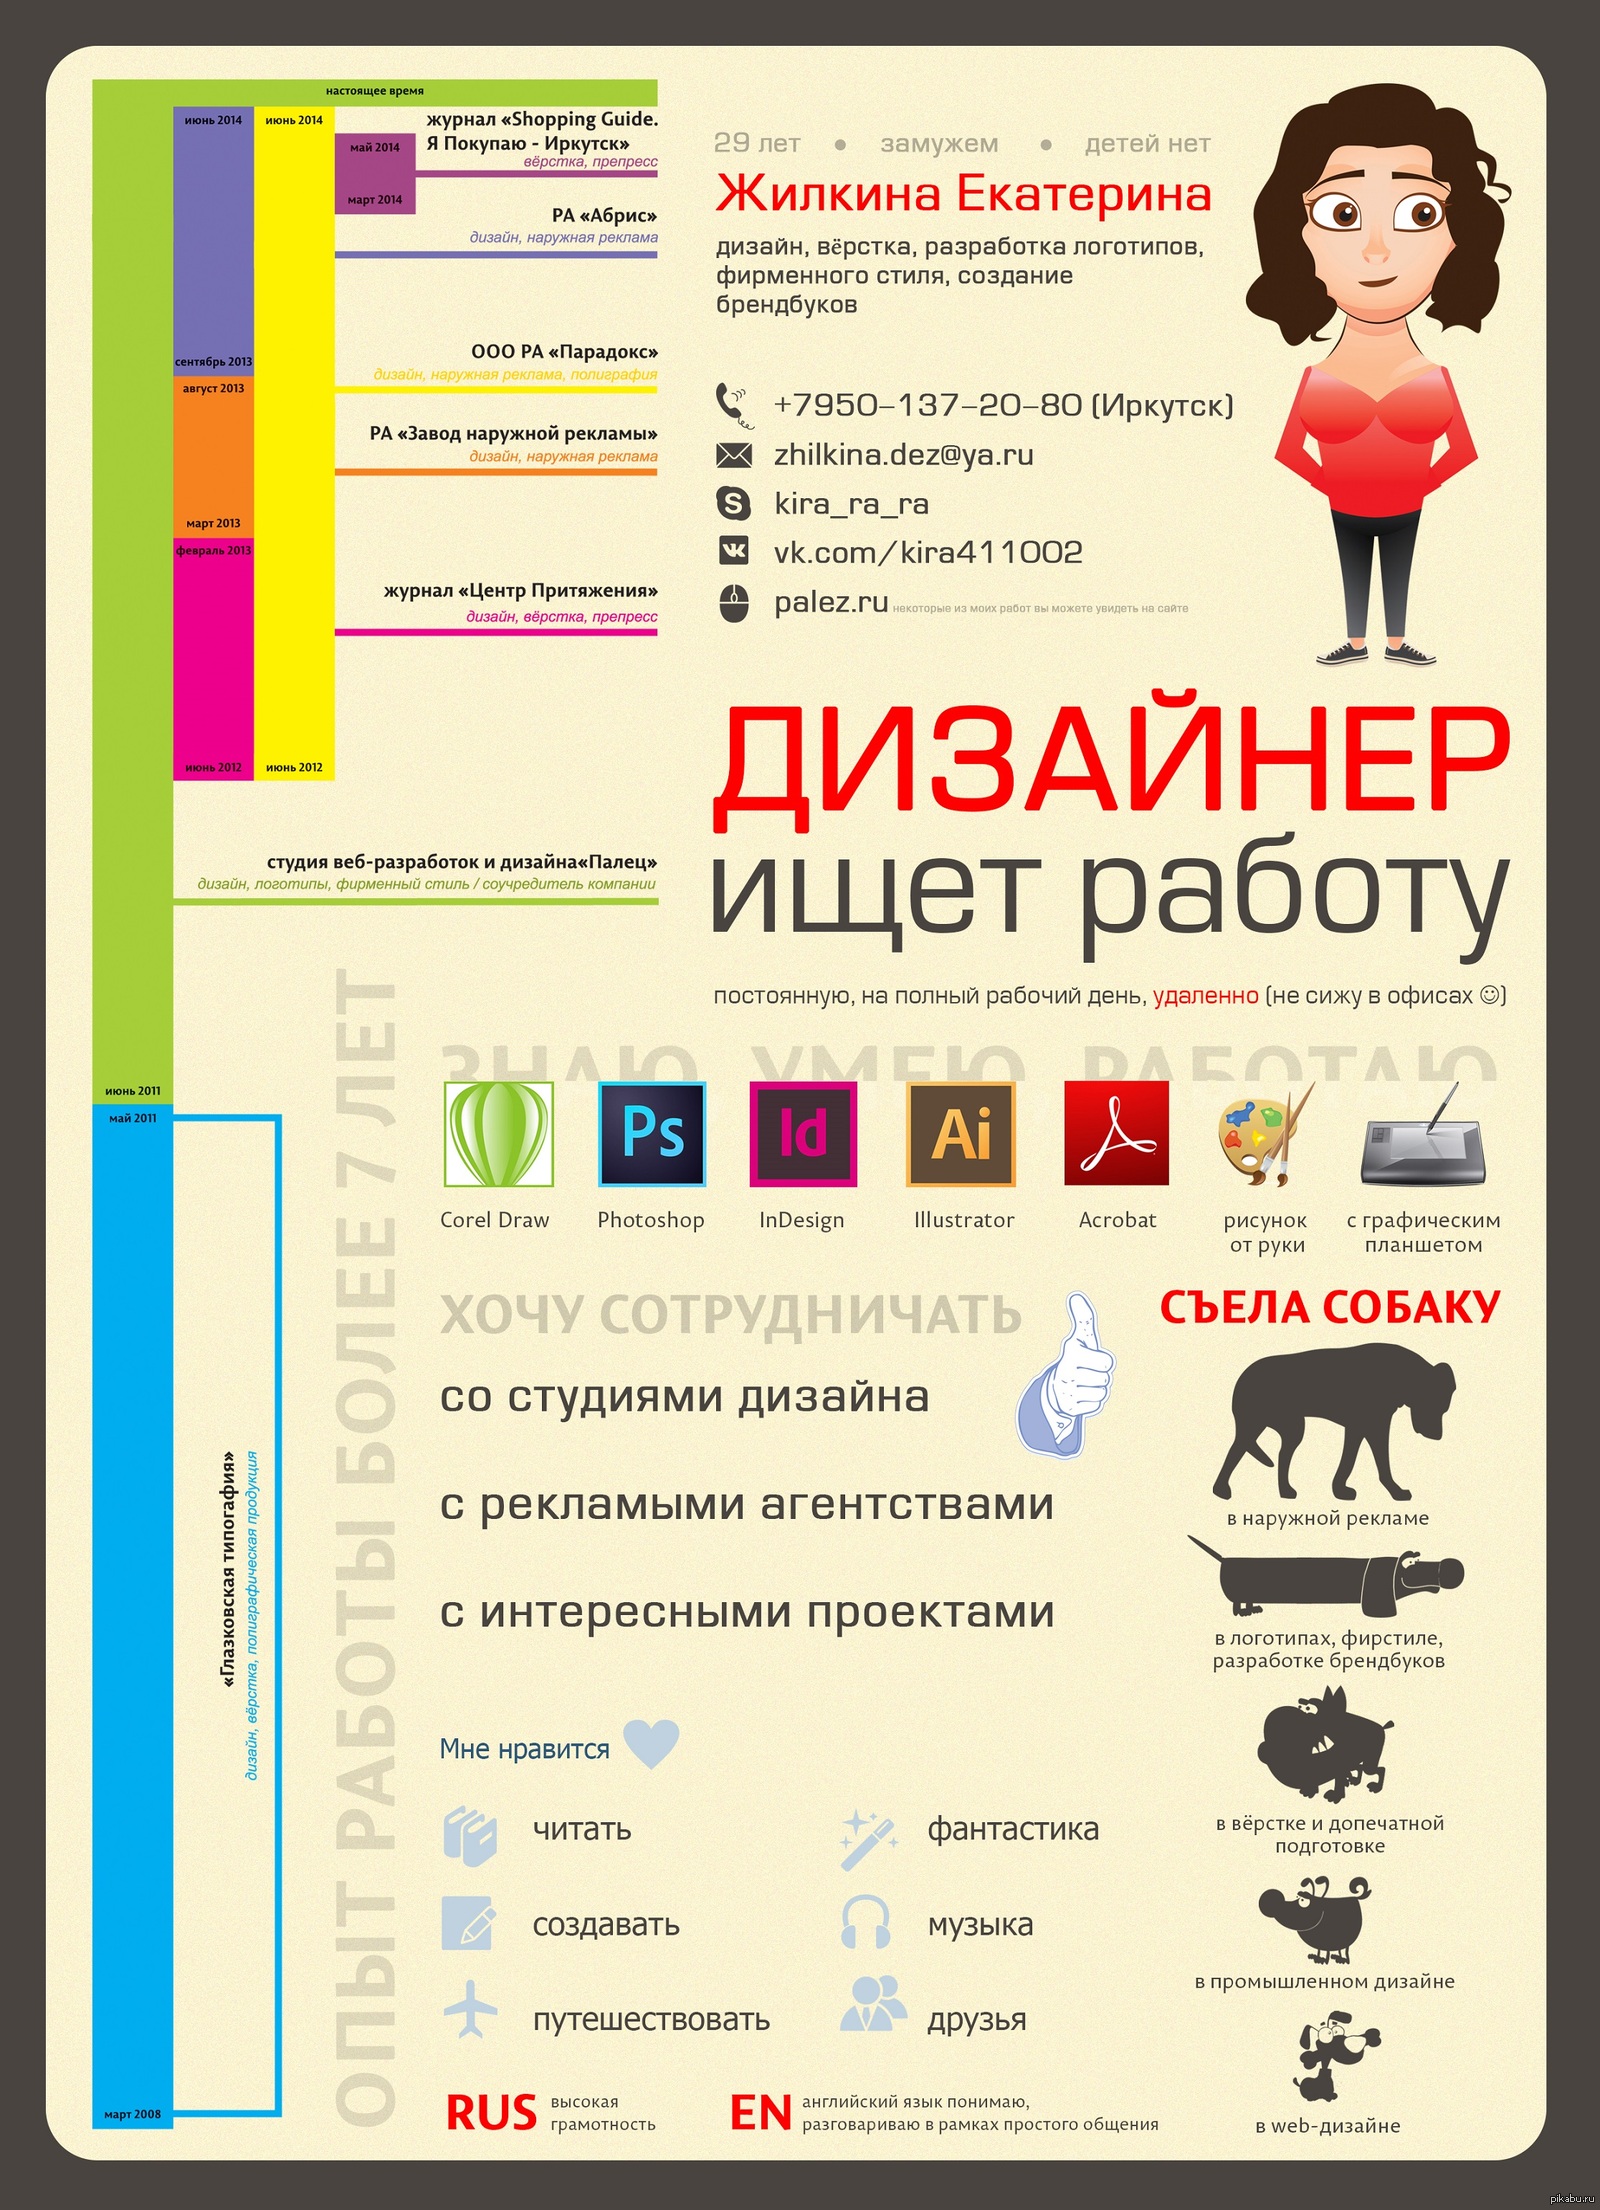 http://s4.pikabu.ru/post_img/big/2014/07/15/3/1405388383_1001387103.jpg